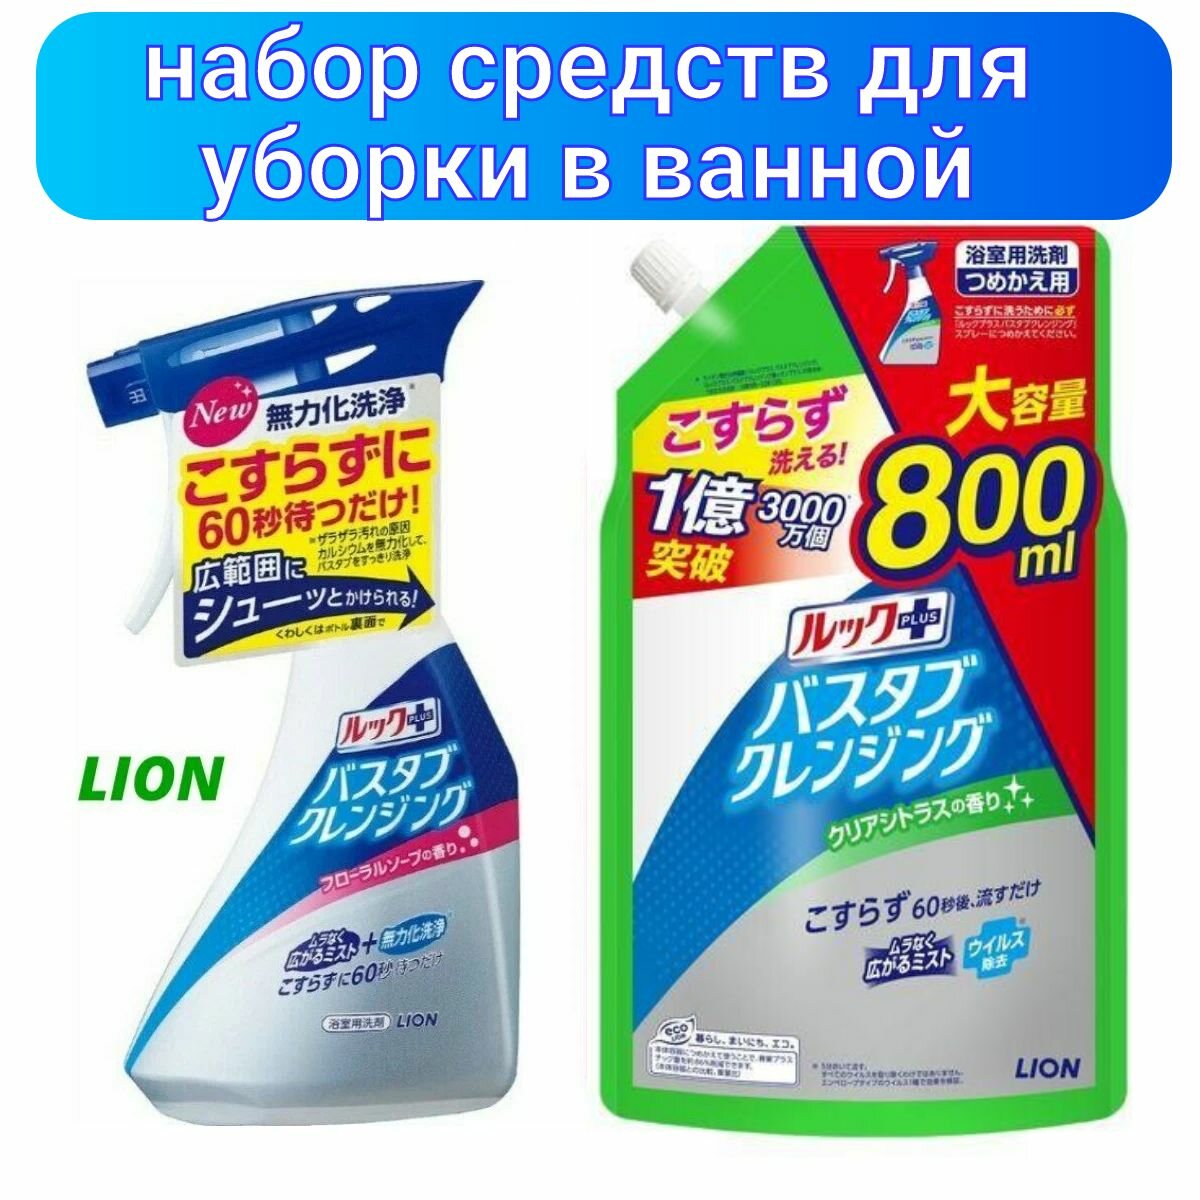 Lion Набор чистящих средств для ванной комнаты "Look Plus" быстрого действия: флакон распылитель 500 мл + мягкая упаковка 800 мл